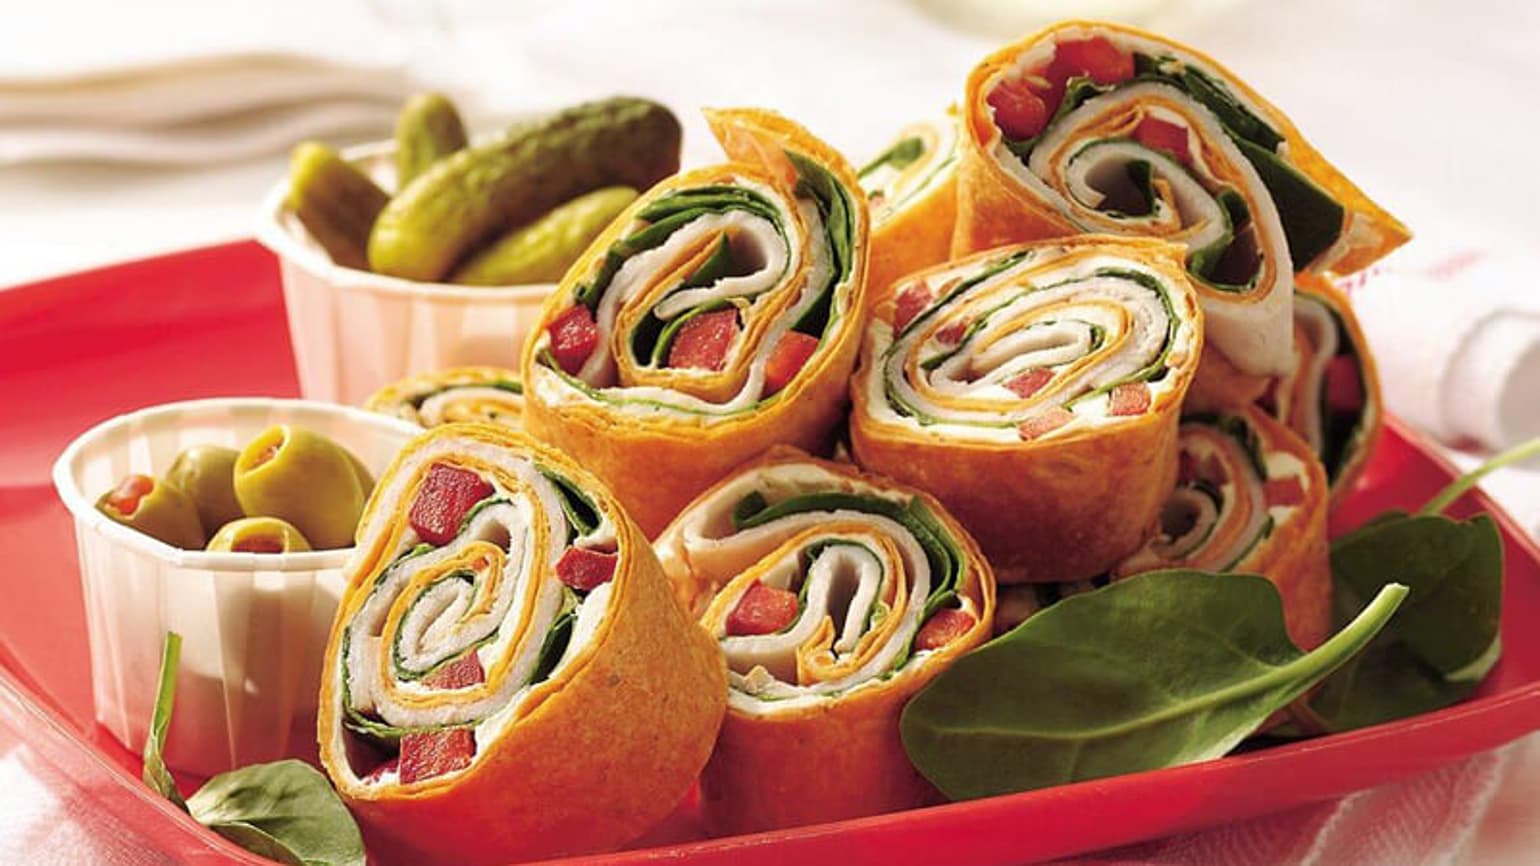 Turkey-Spinach Wraps